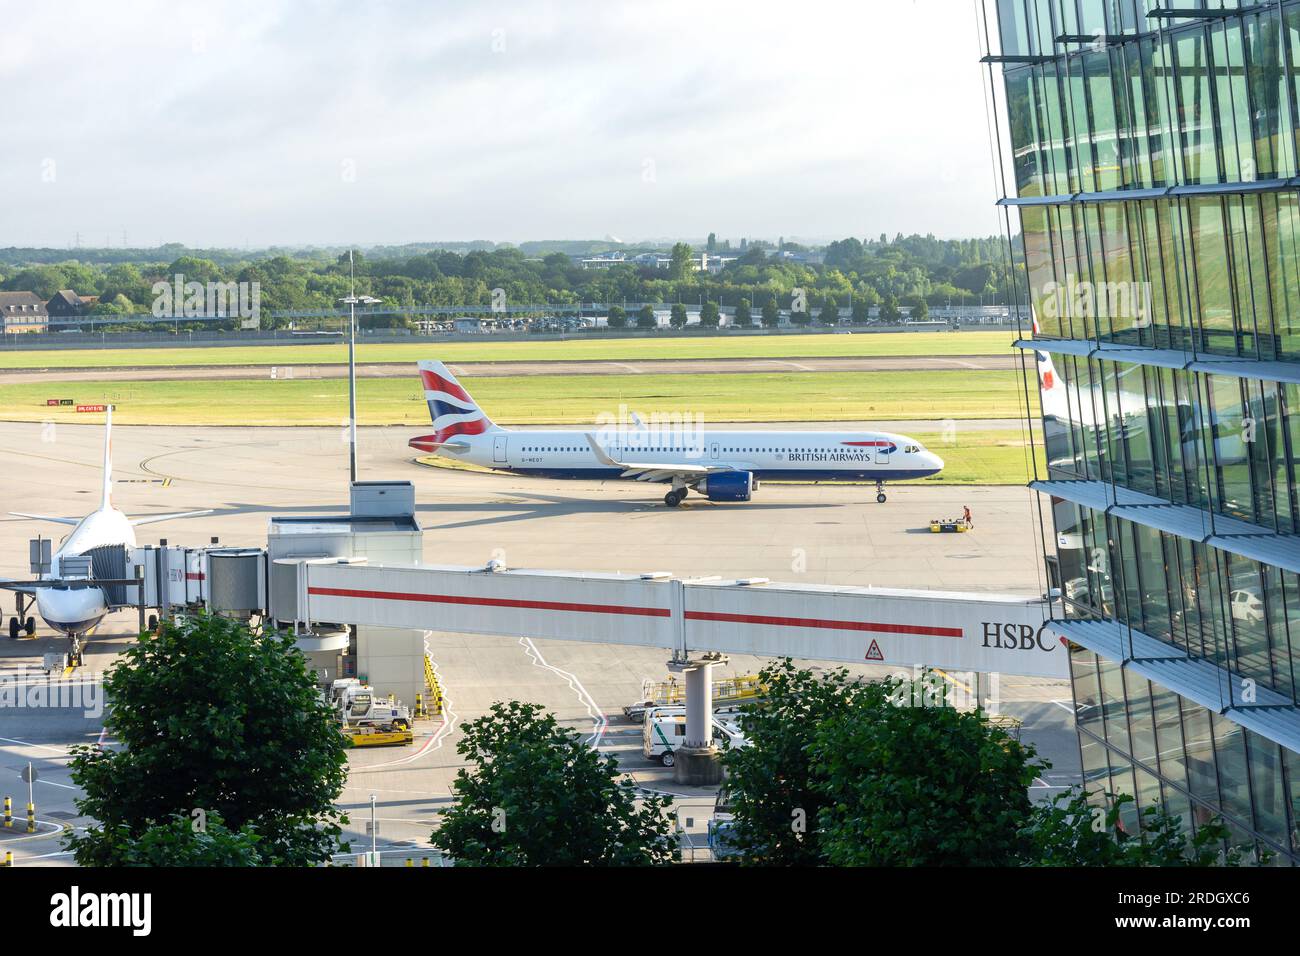 Airbus A321 della British Airways in arrivo al Terminal 5, Aeroporto di Heathrow. London Borough of Hillingdon, Greater London, Inghilterra, Regno Unito Foto Stock